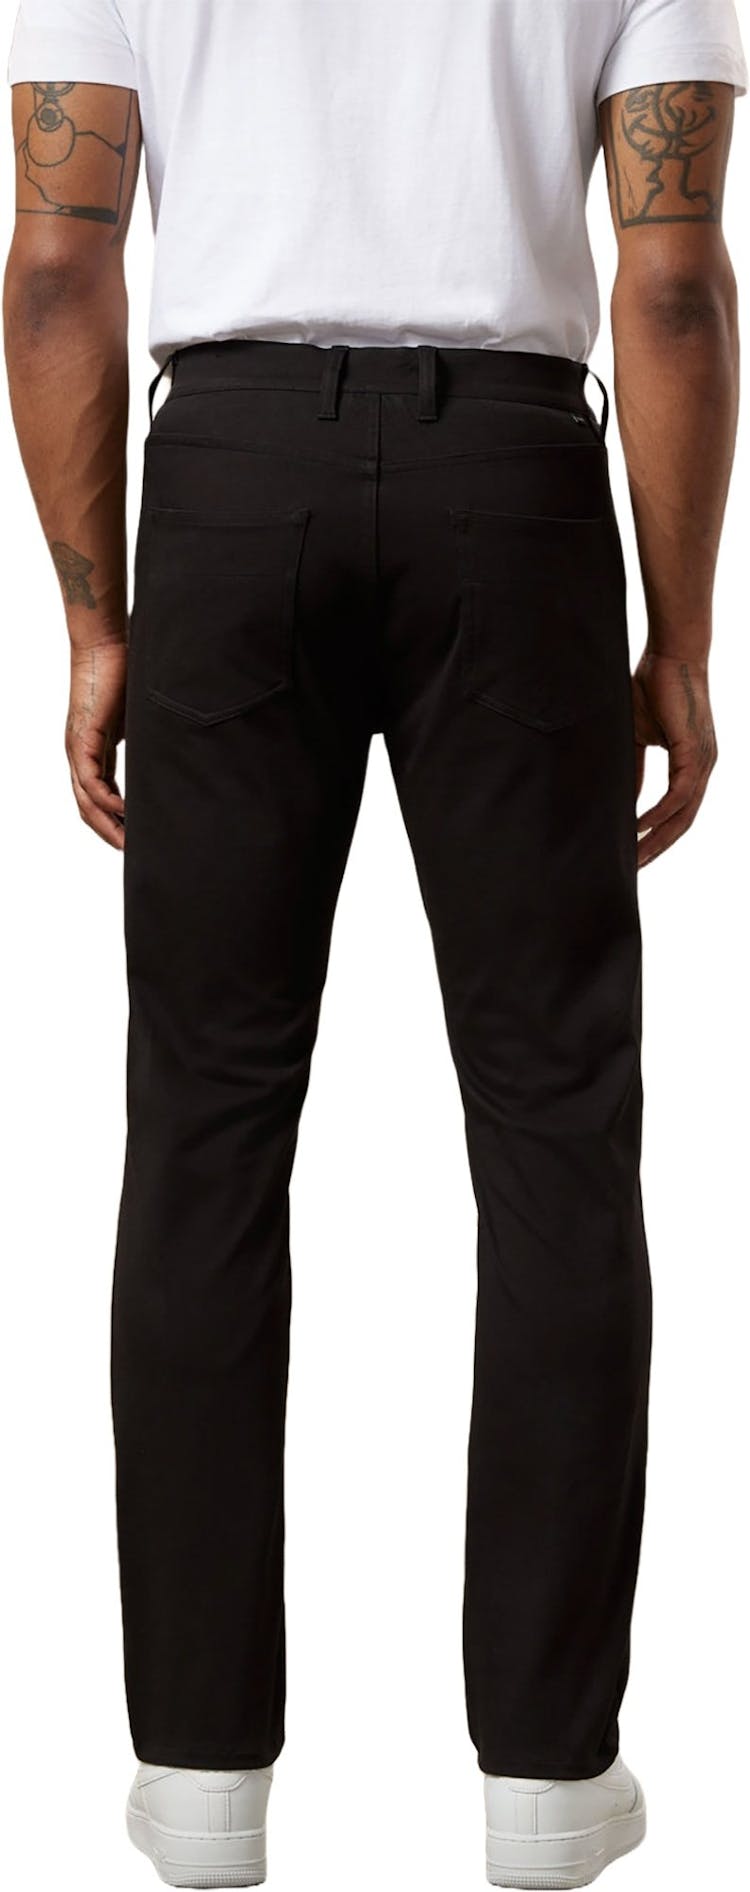 Numéro de l'image de la galerie de produits 4 pour le produit Pantalon coupe ajustée Flex - Homme